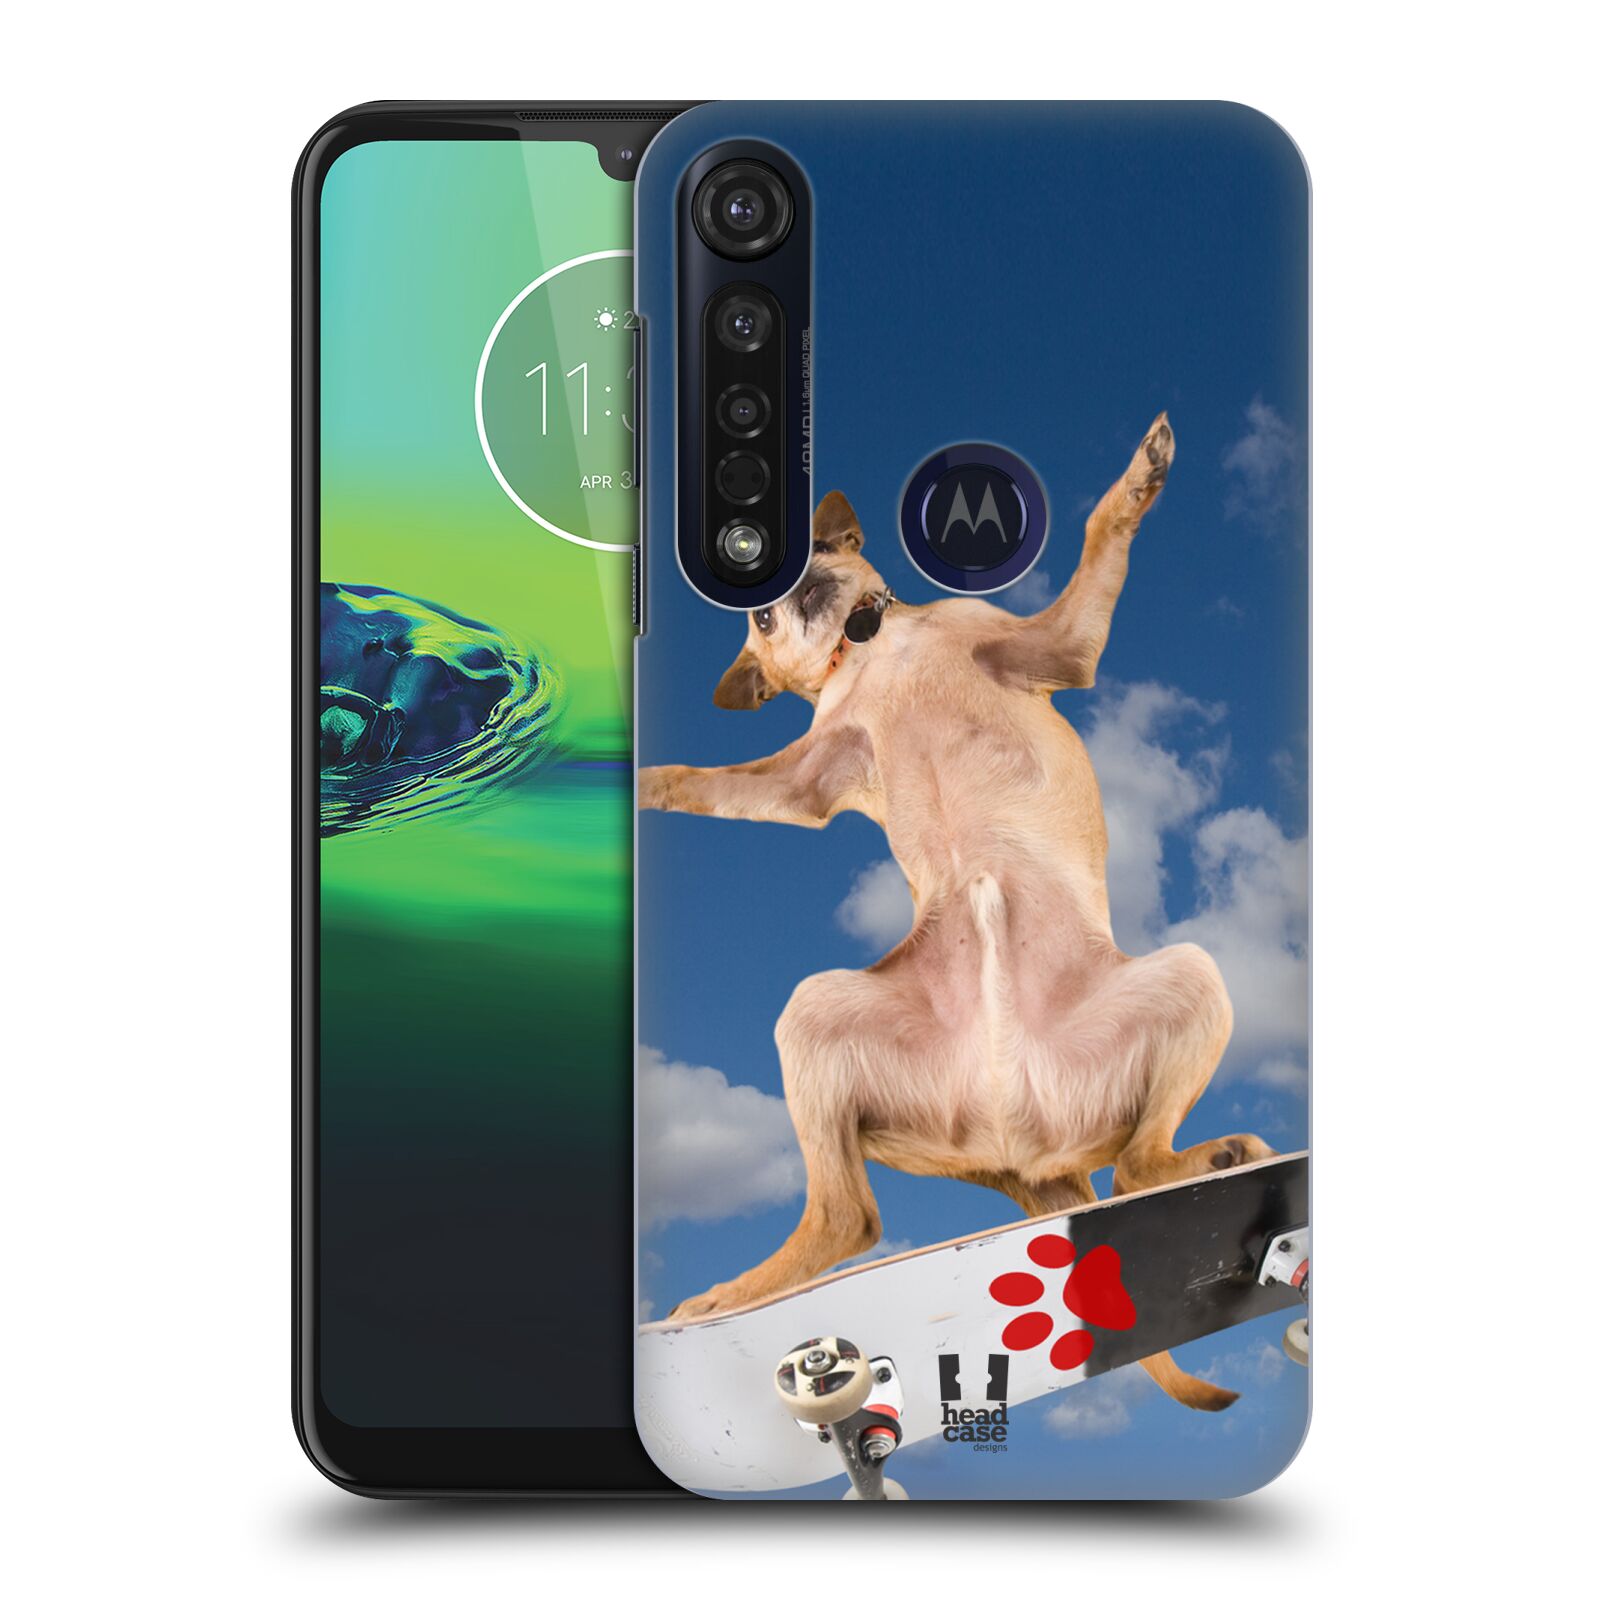 Pouzdro na mobil Motorola Moto G8 PLUS - HEAD CASE - vzor Legrační zvířátka pejsek skateboard